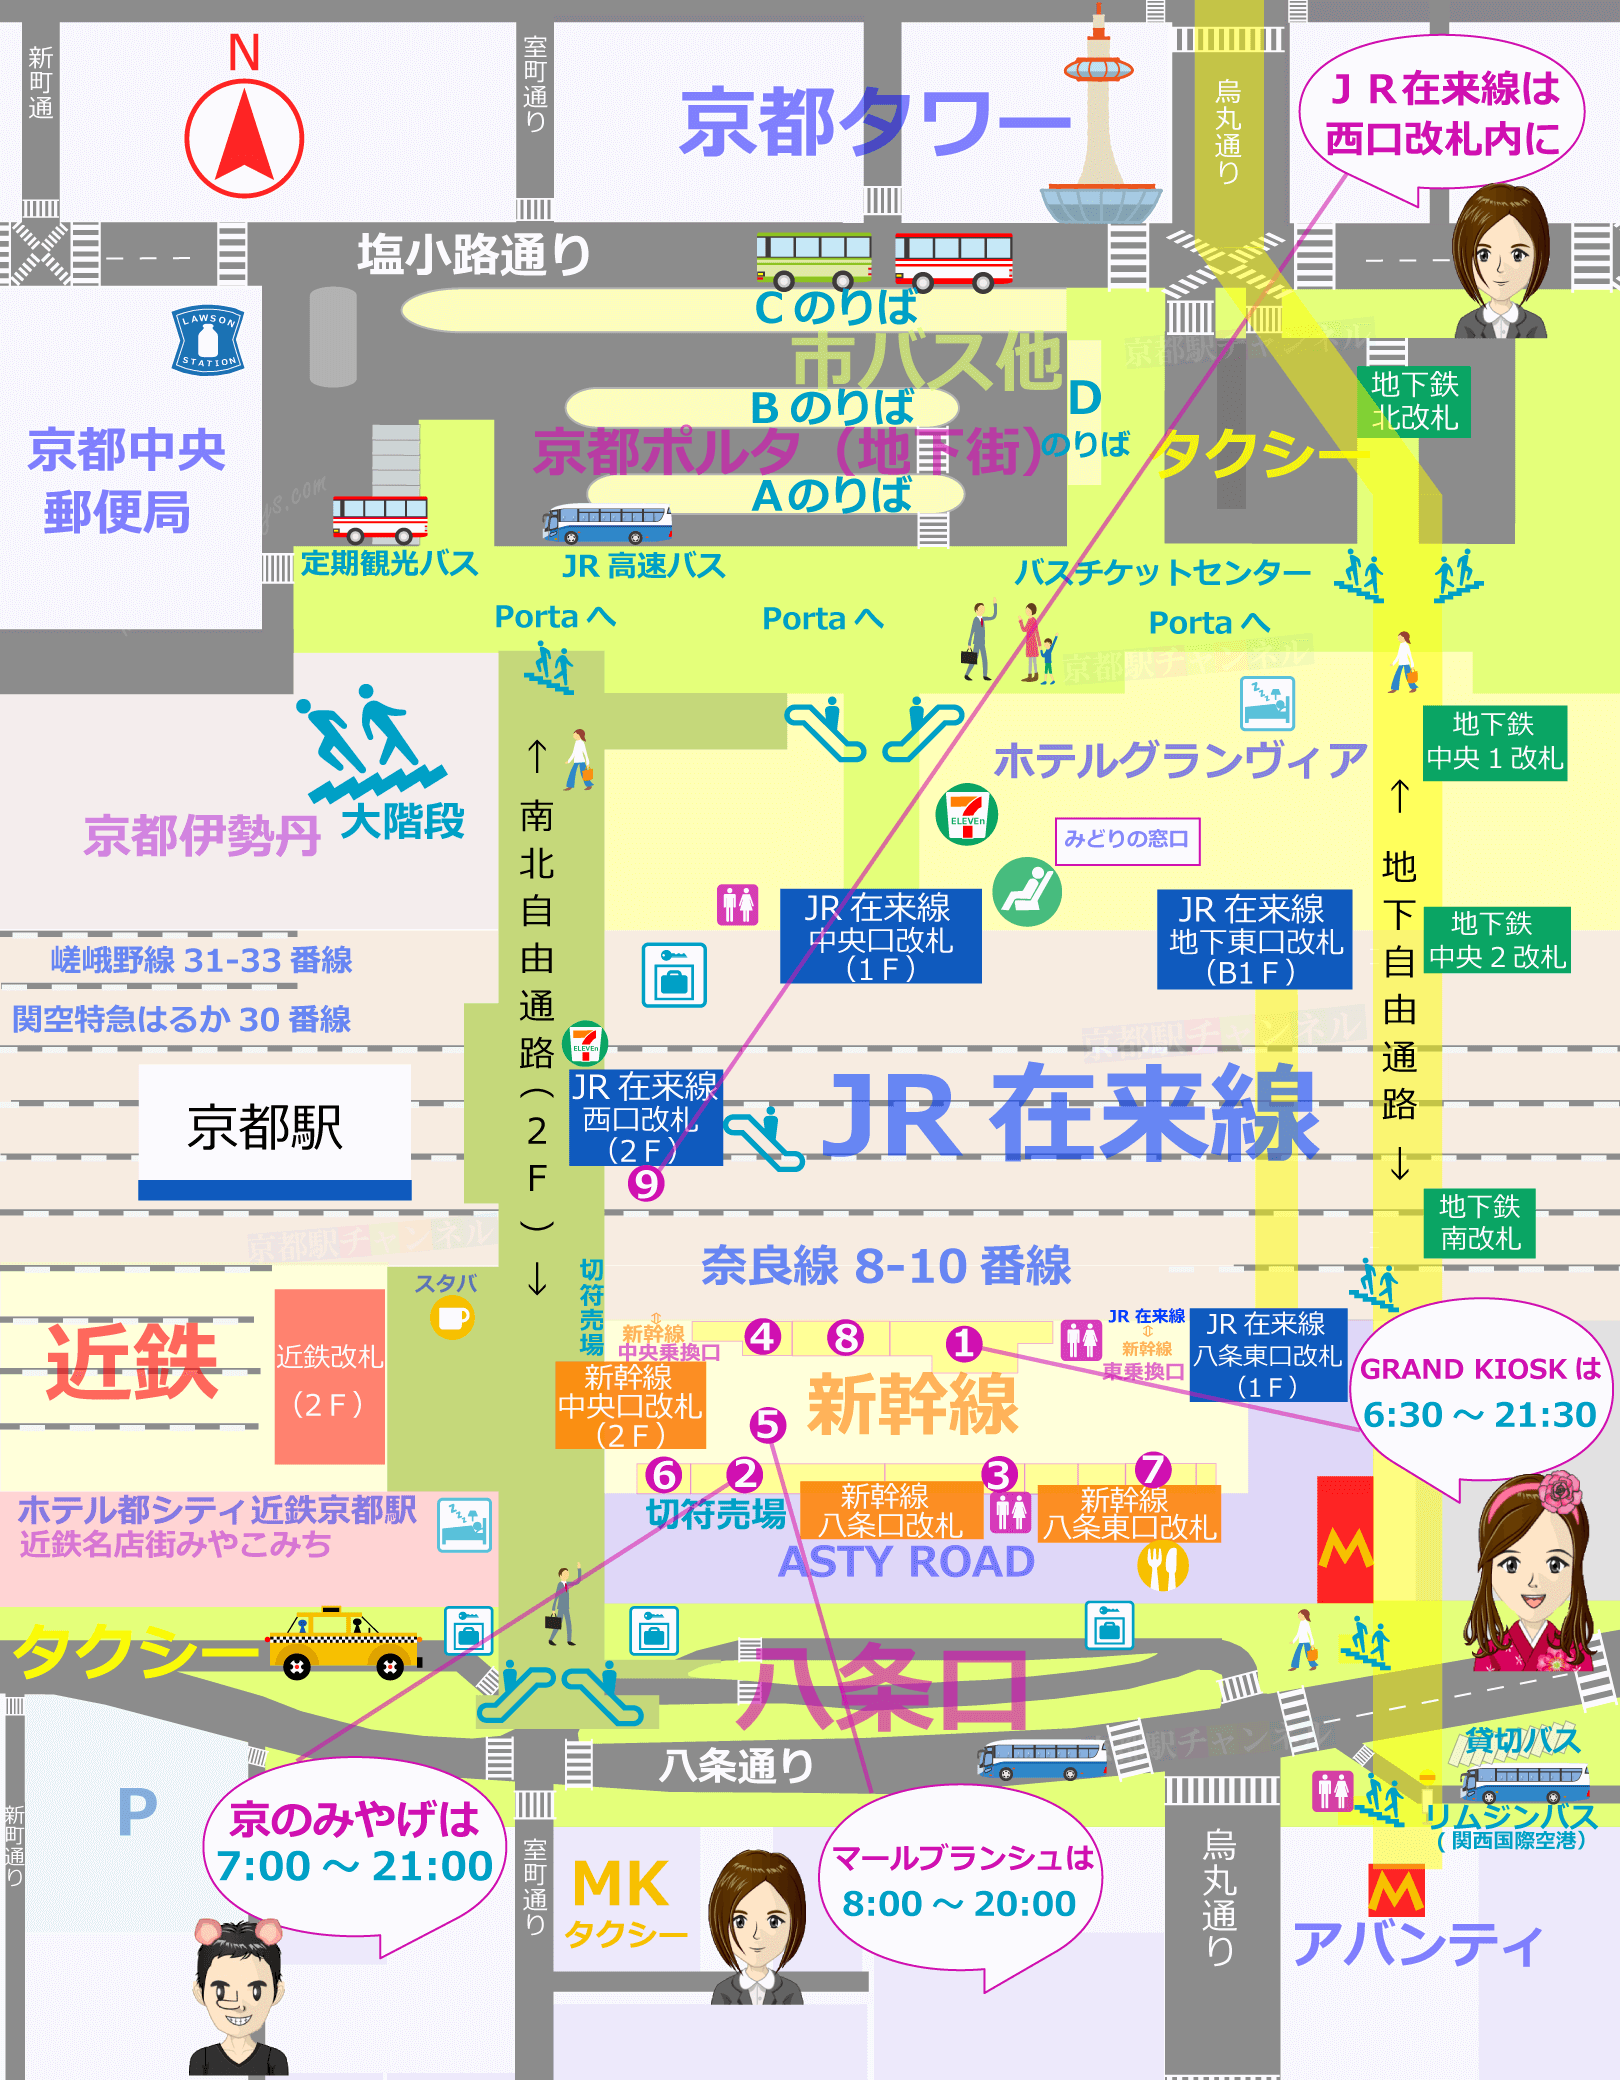 京都駅の全体図と改札内のお土産売り場マップ